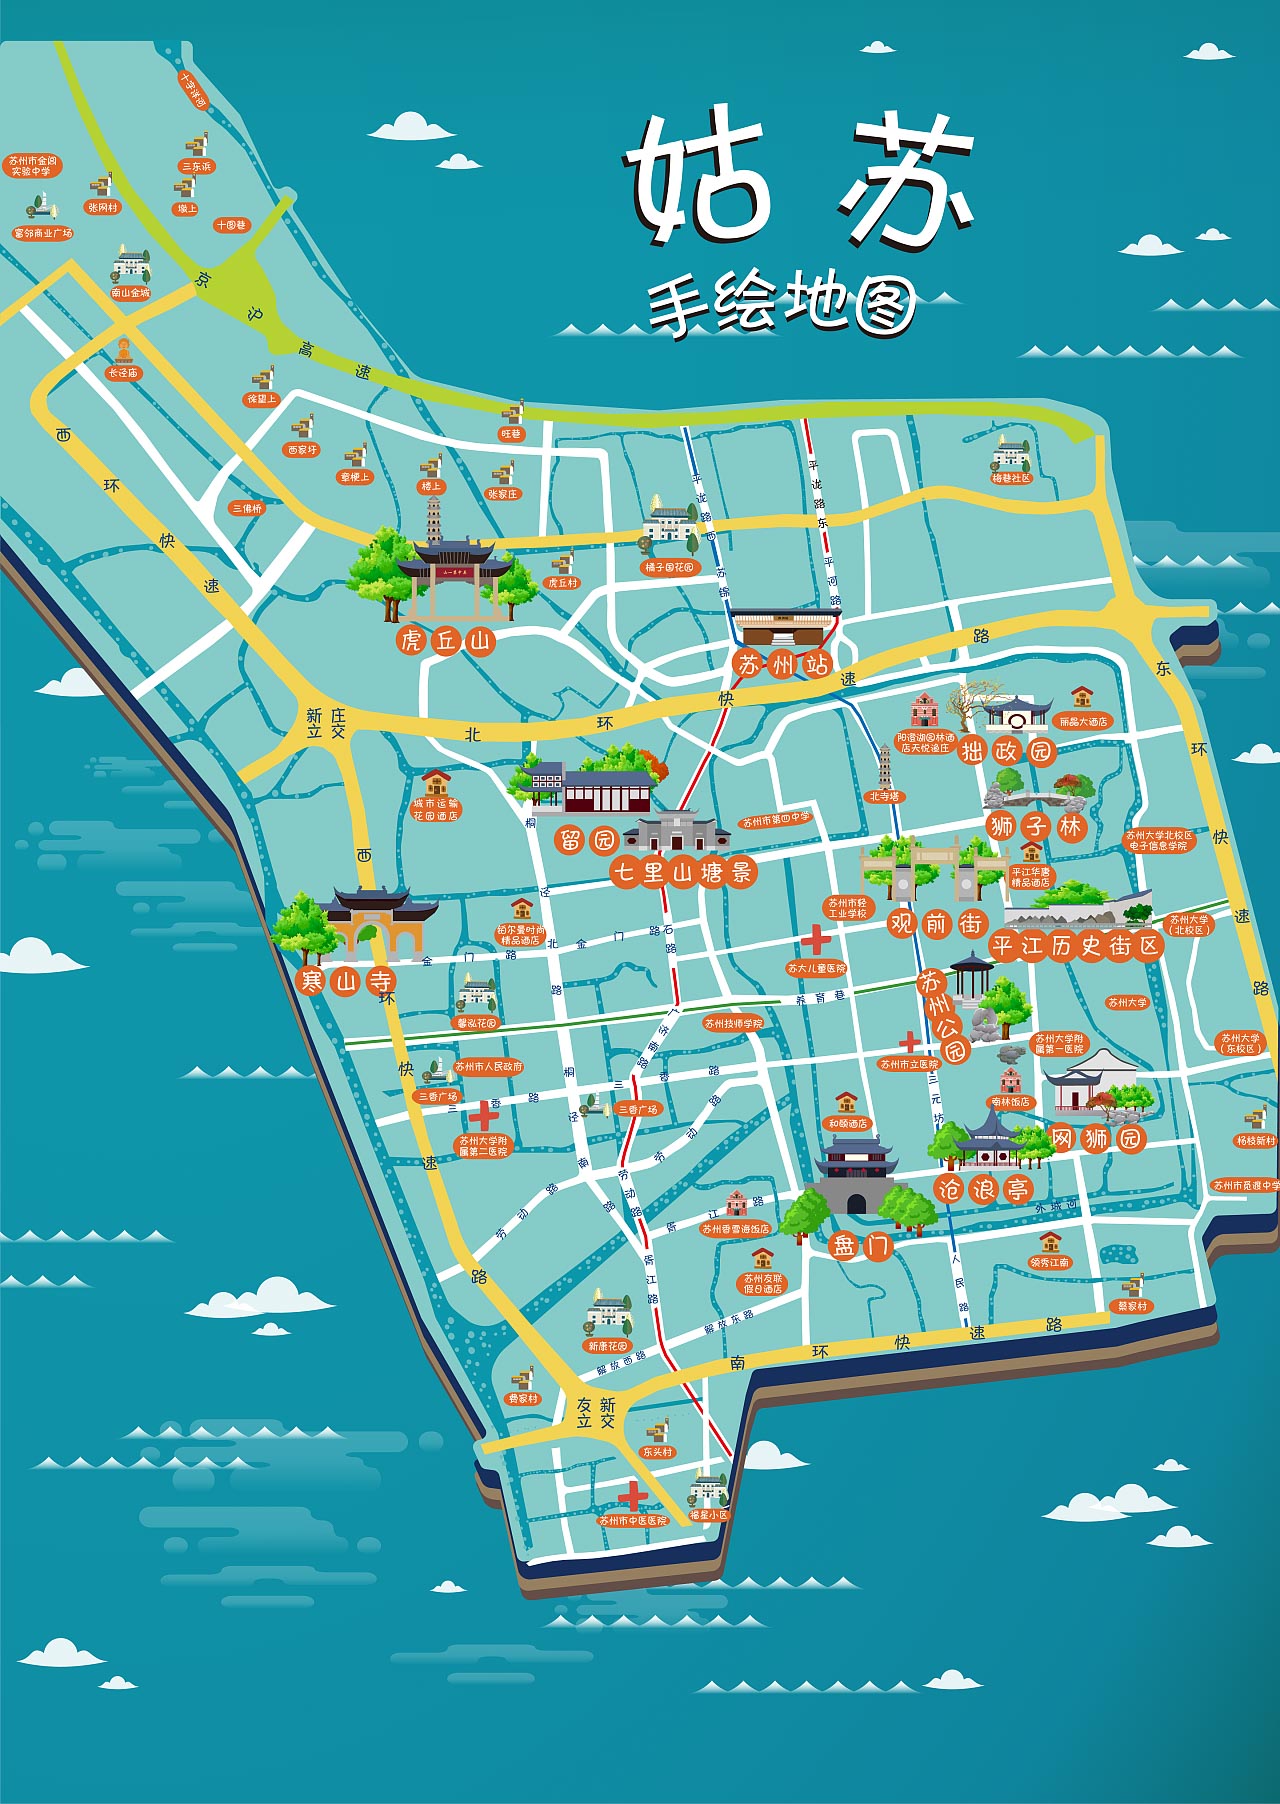 三伏潭镇手绘地图景区的文化宝藏